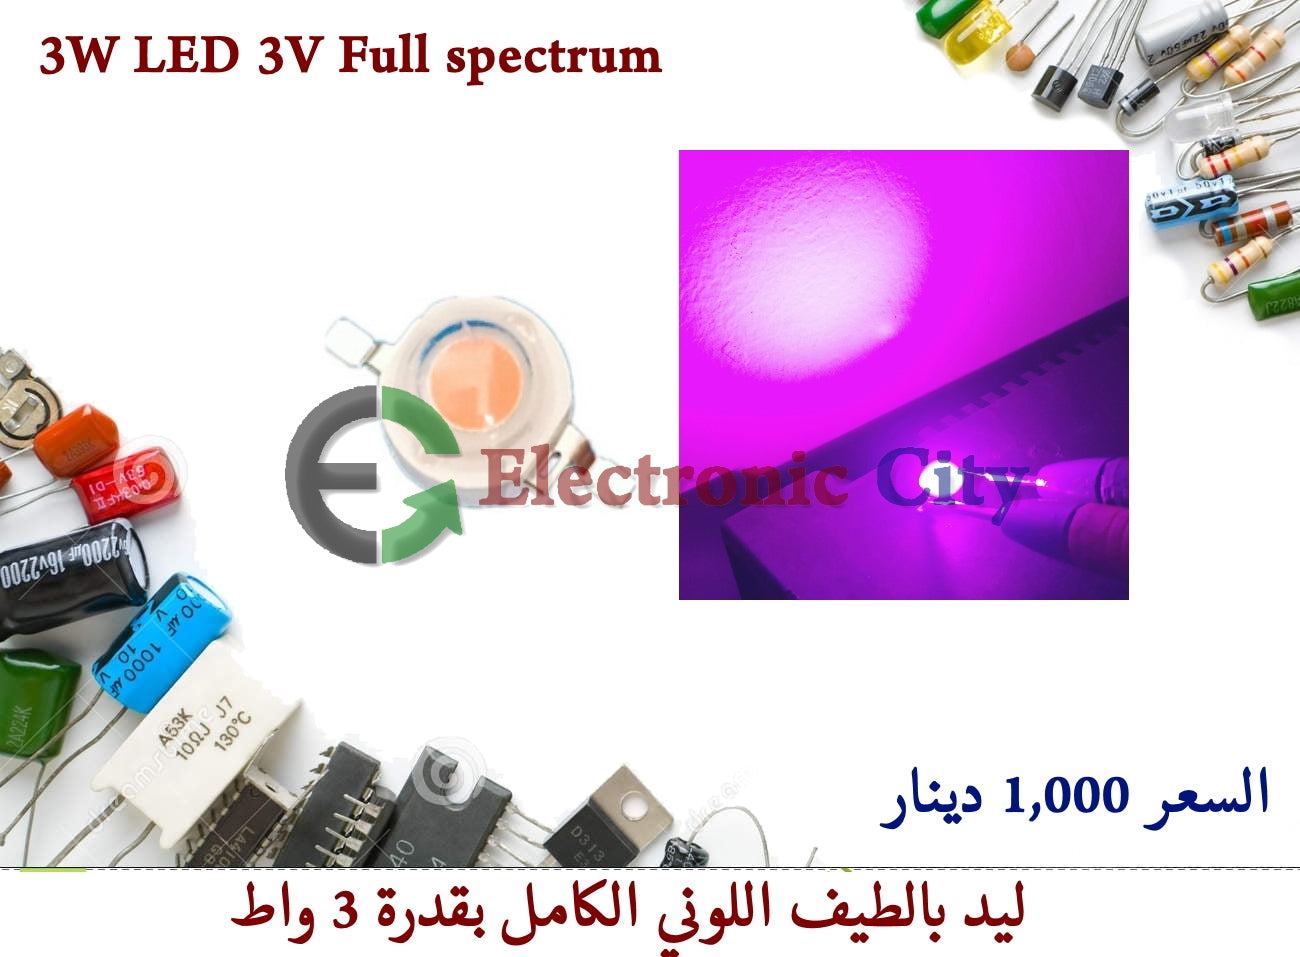 3W LED 3V Full spectrum